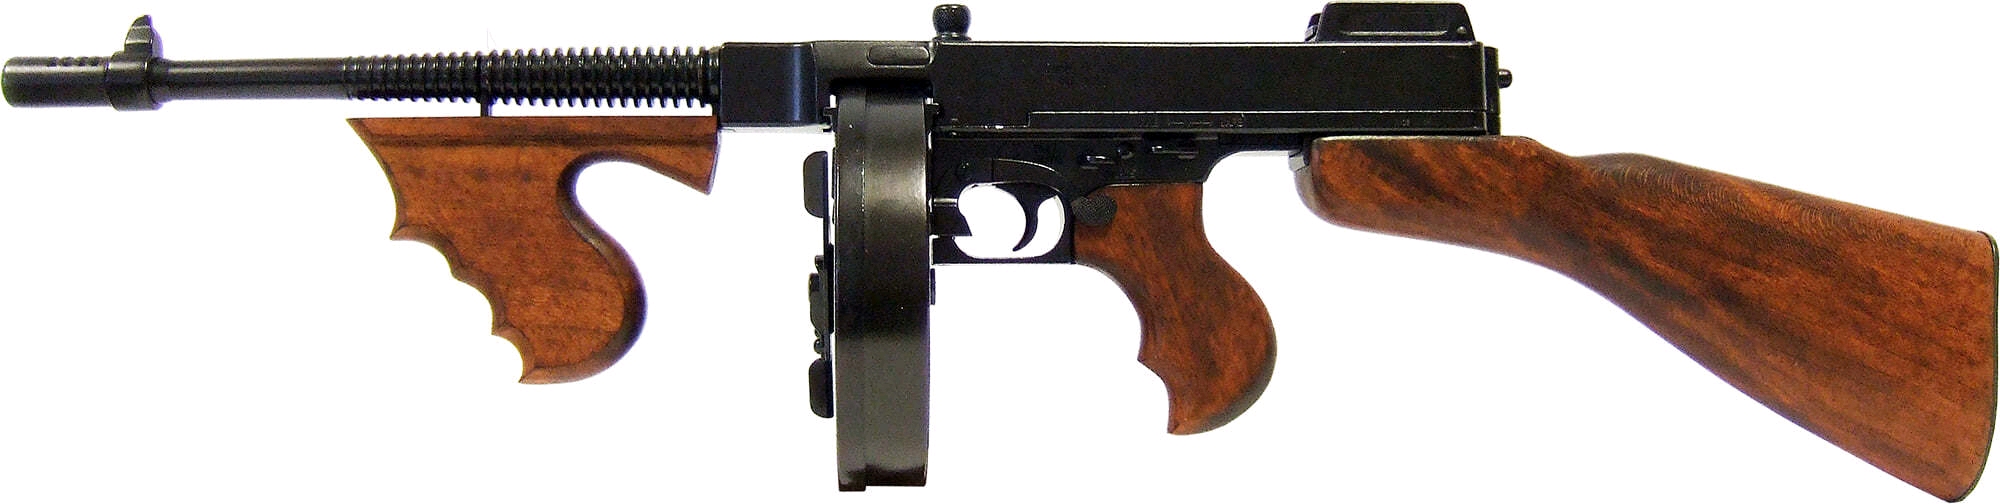 汤姆森m1928型,枪管相比m1921厚重了很多不是直线条而是带有一定弧度